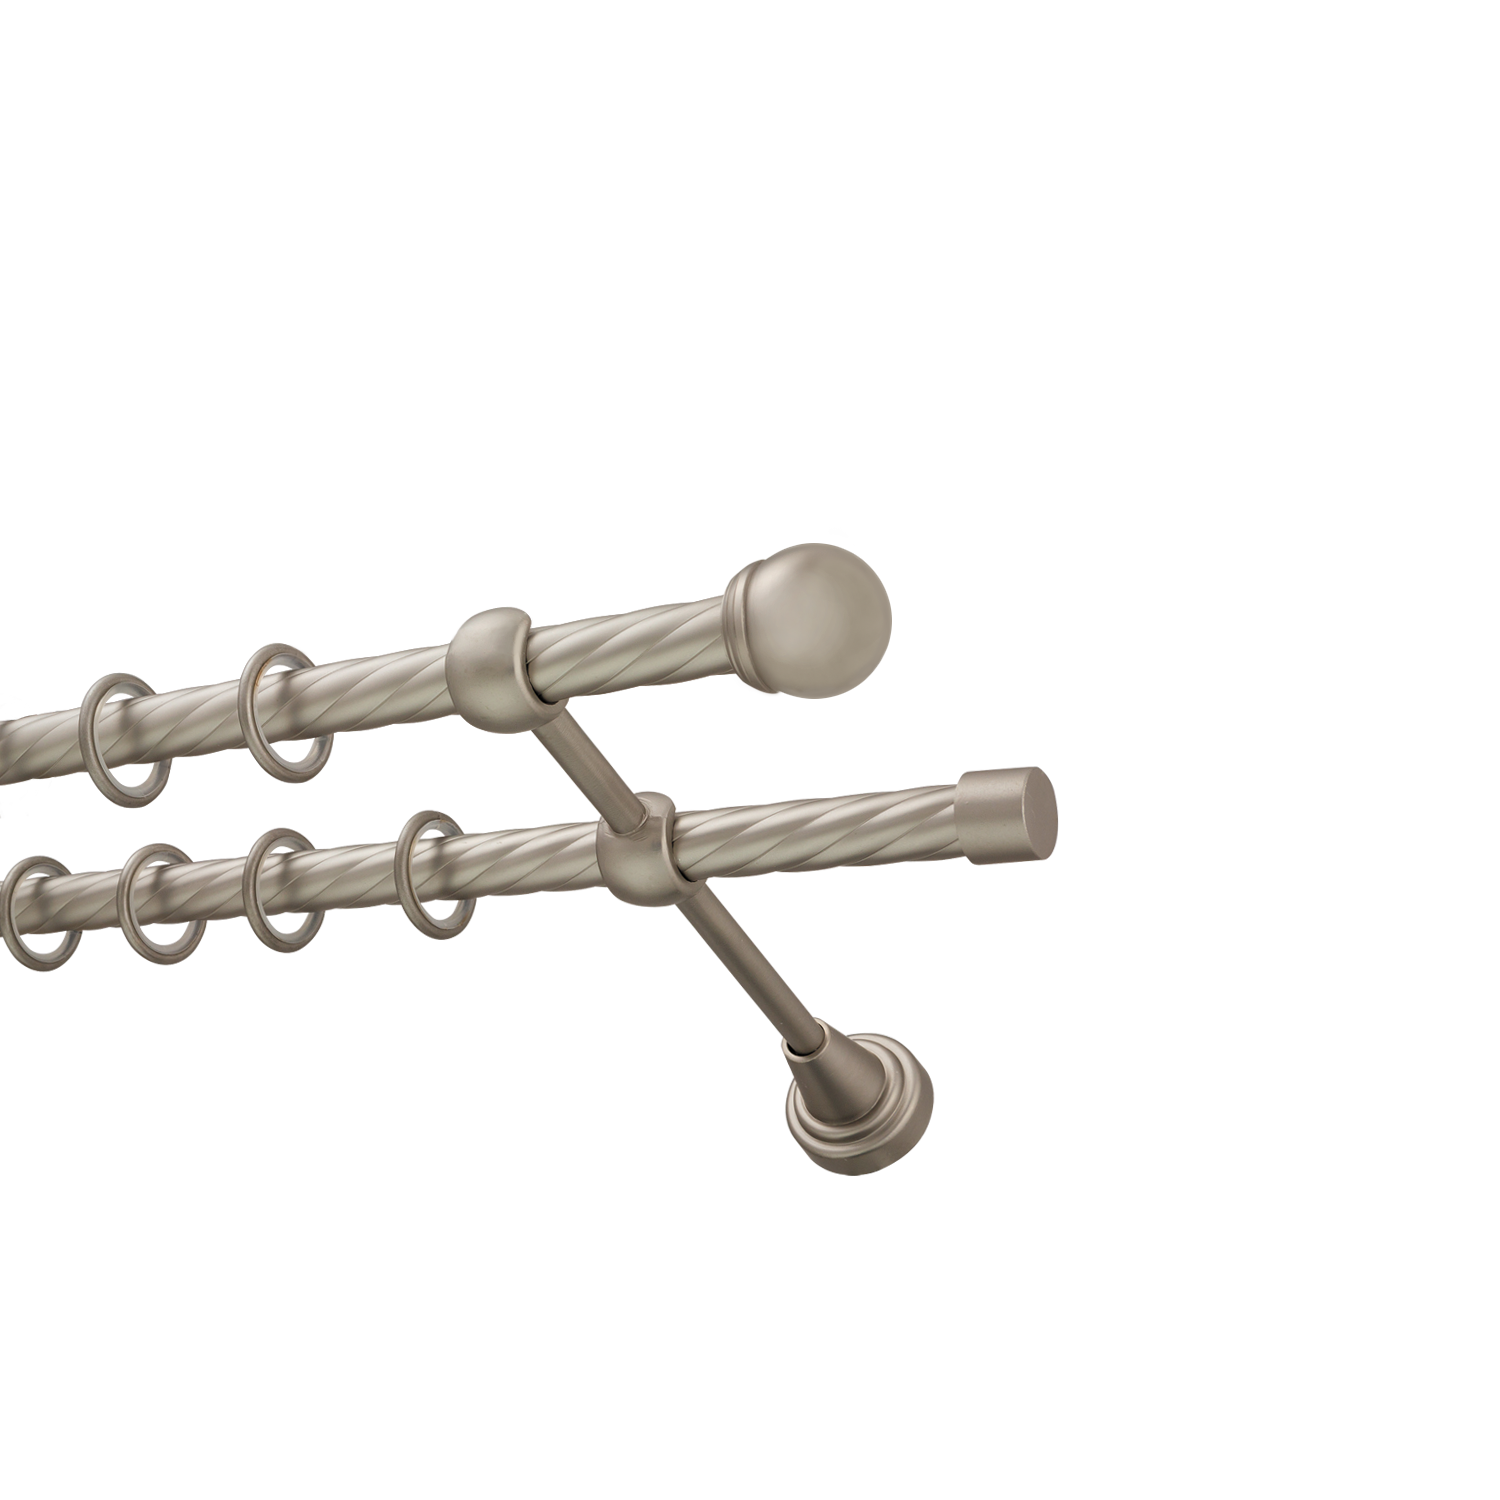 Металлический карниз для штор Вива, двухрядный 16/16 мм, сталь, витая штанга, длина 180 см